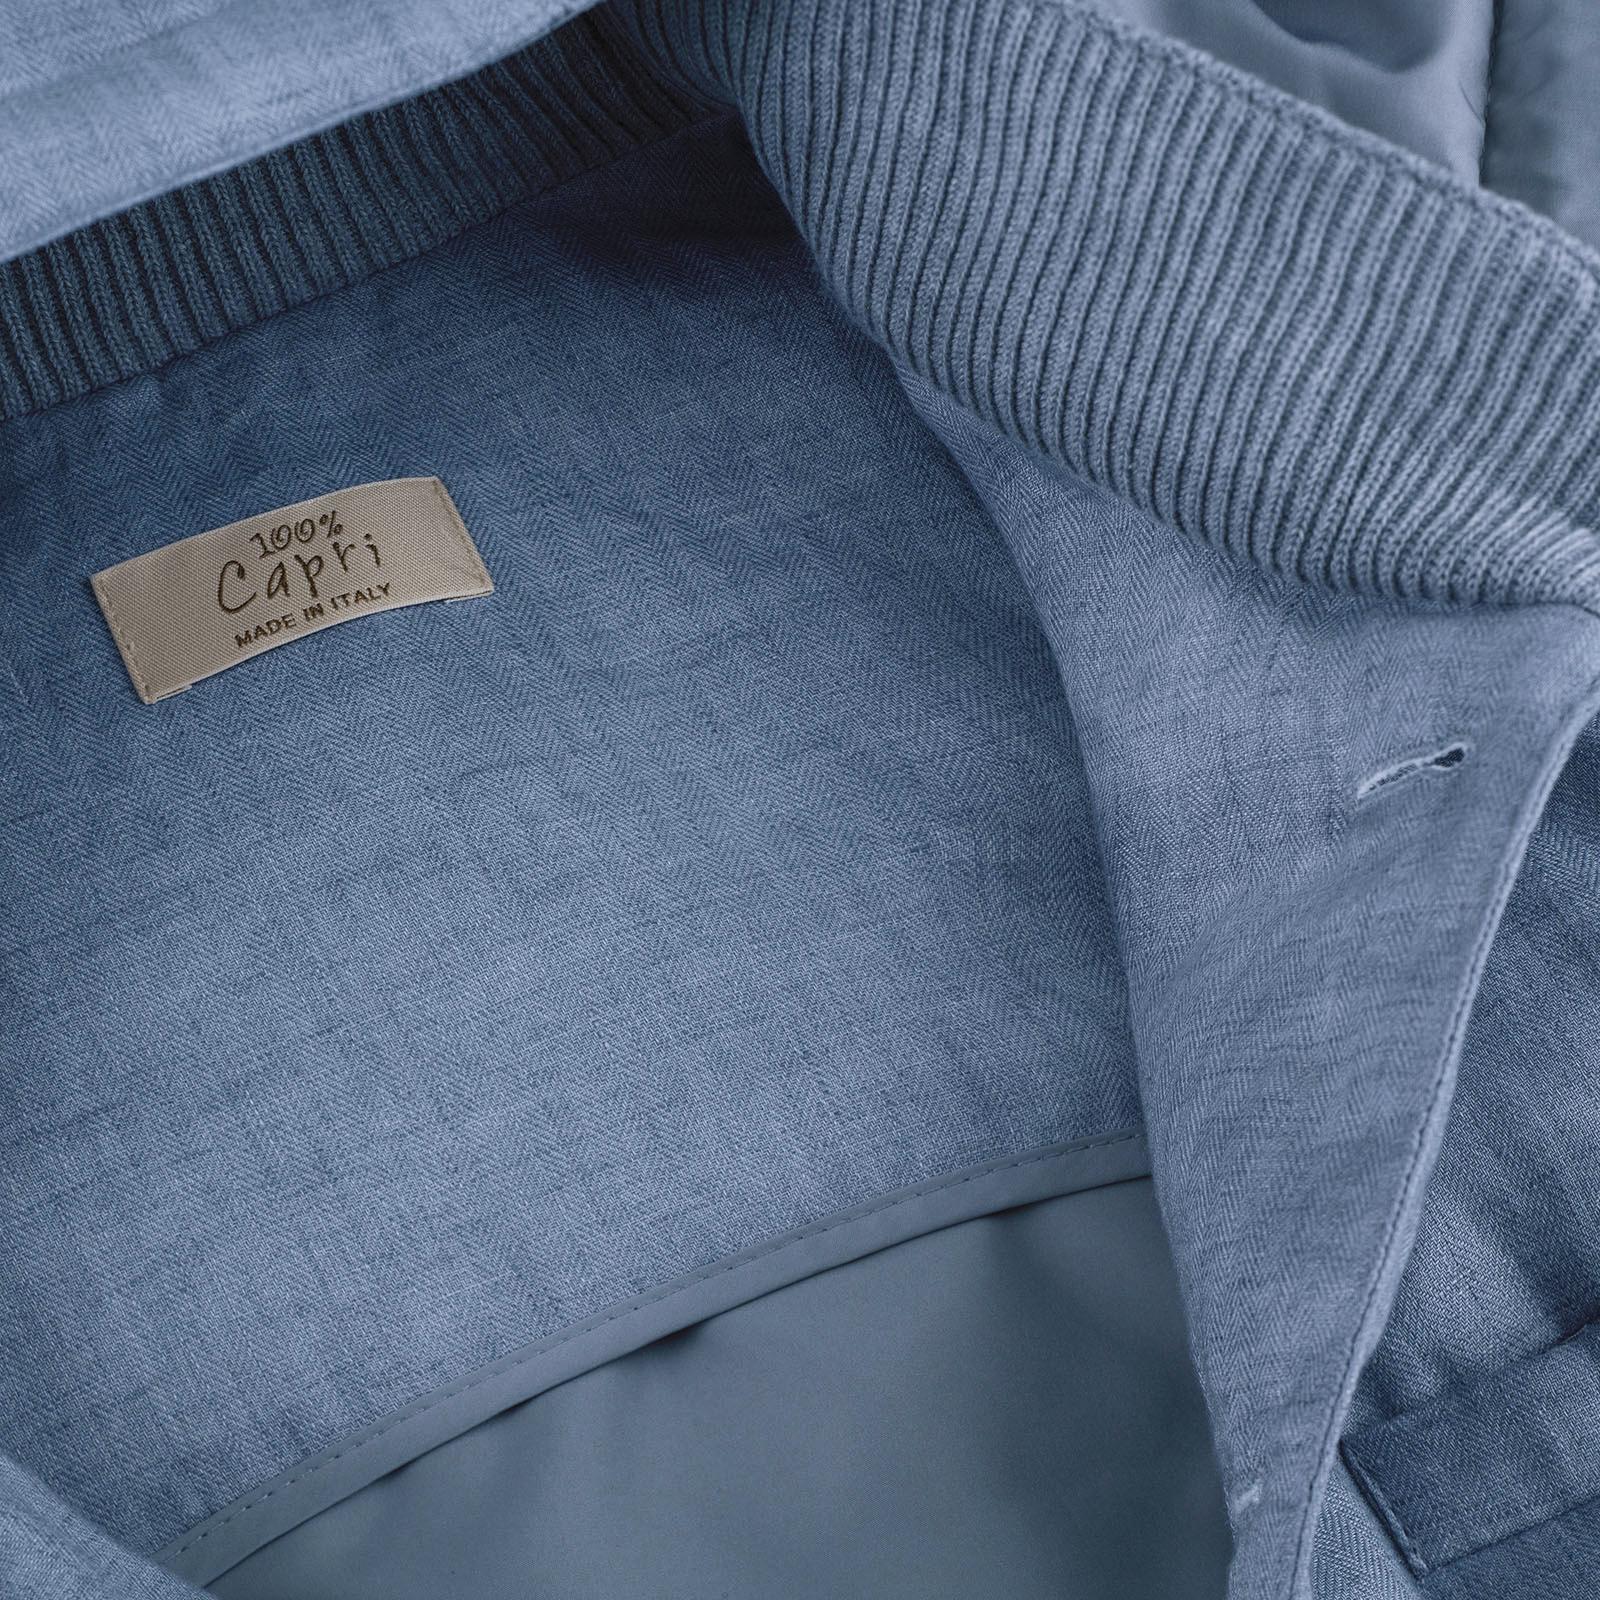 Gilet Cappuccio 100% Capri jeans linen gilet detail